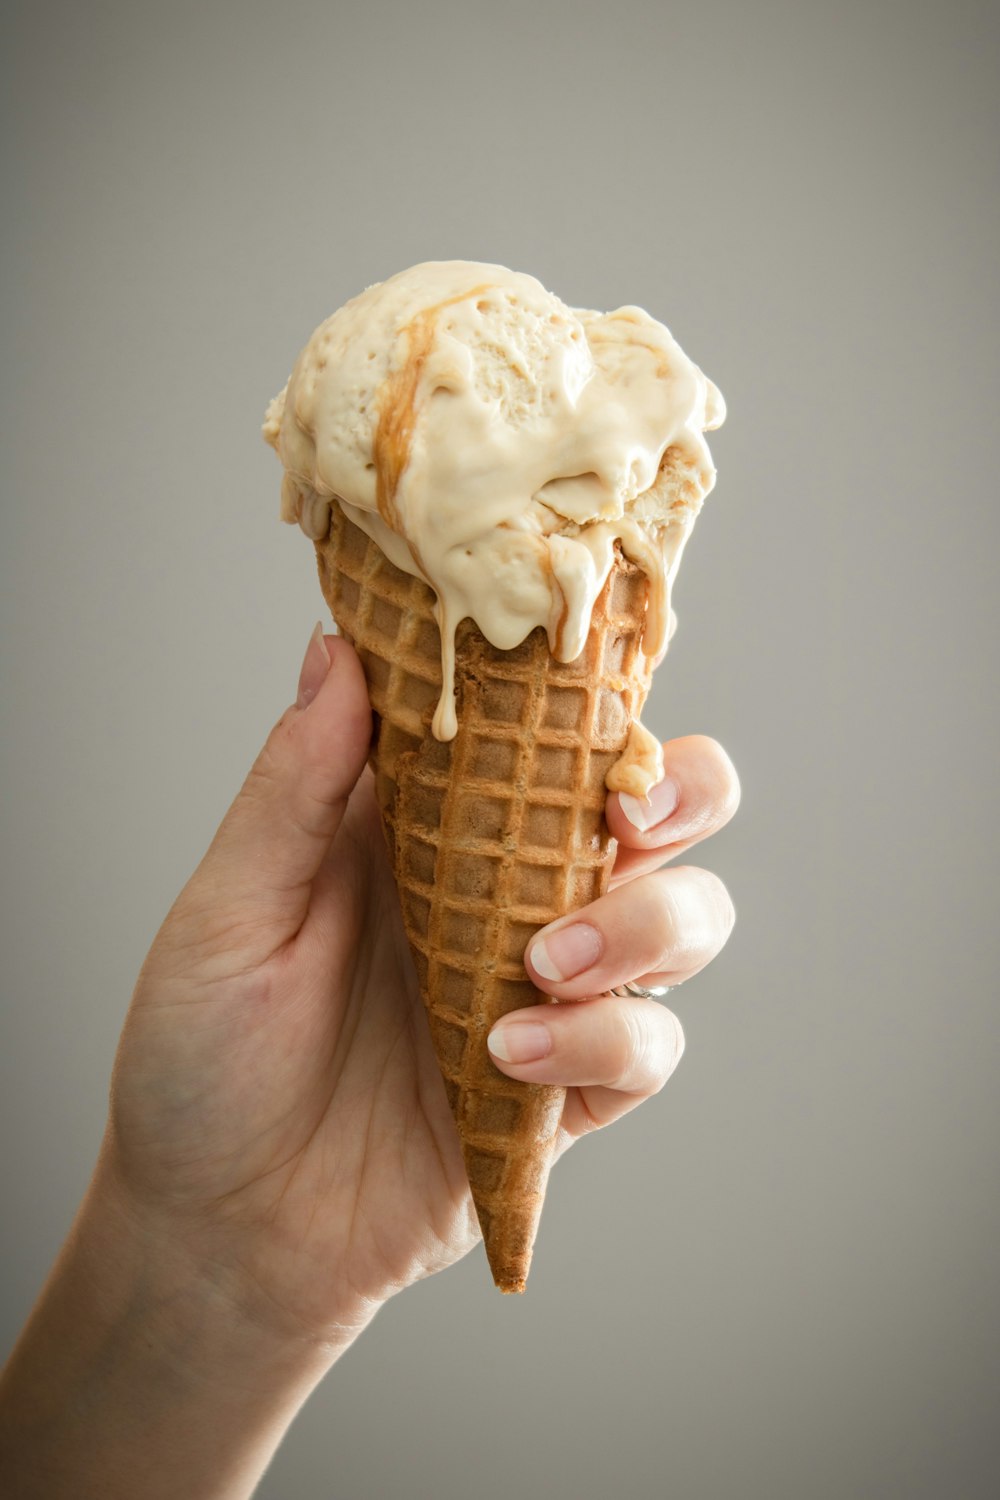 갈색 콘에 하얀 아이스크림